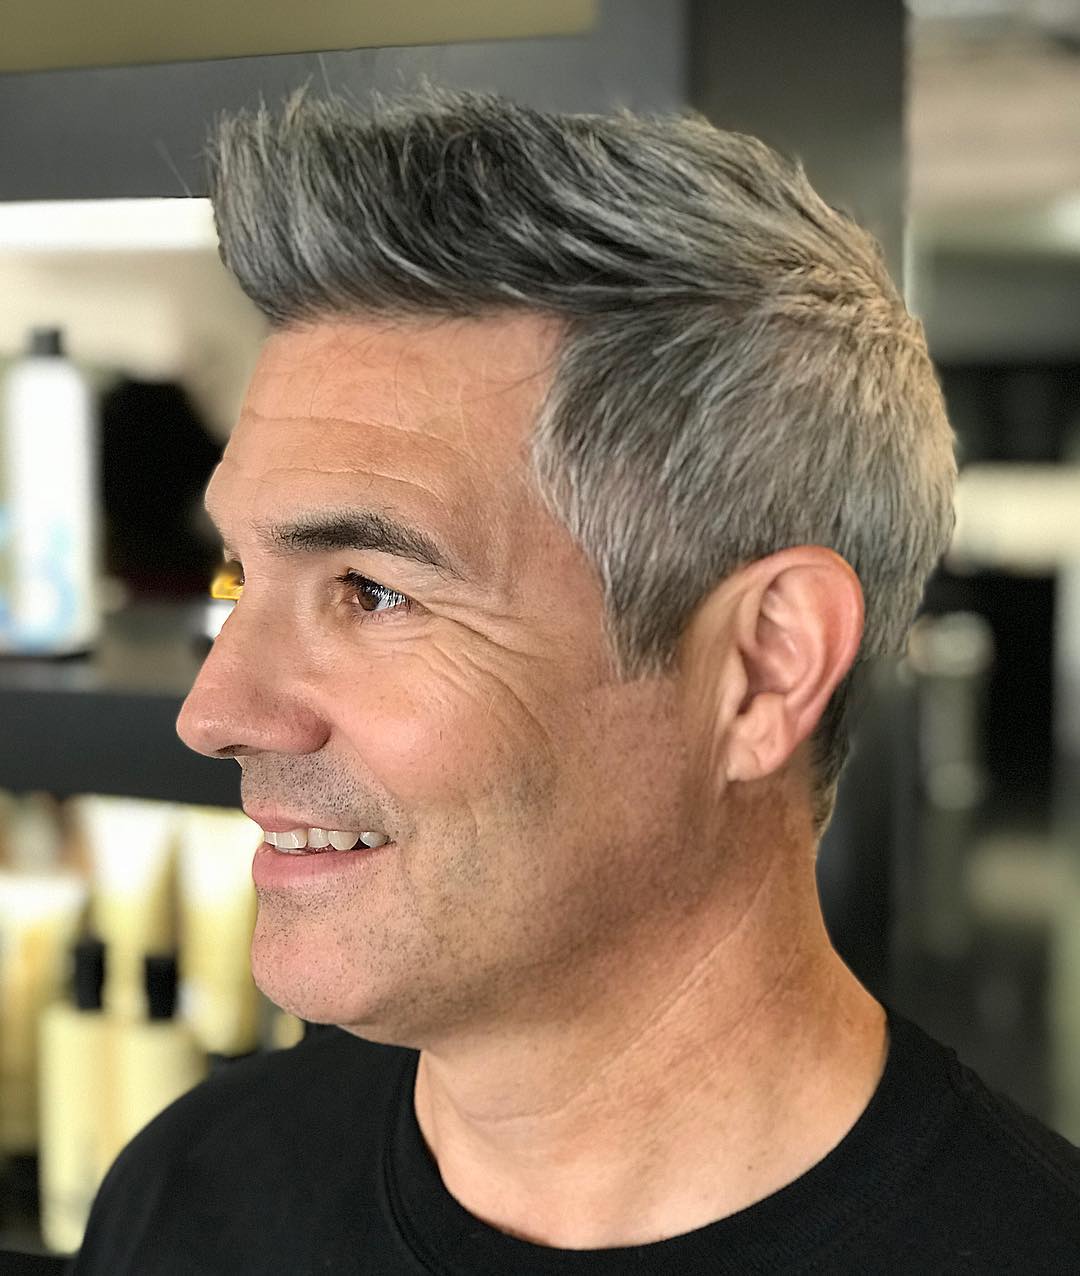 Quiff haircut for older men